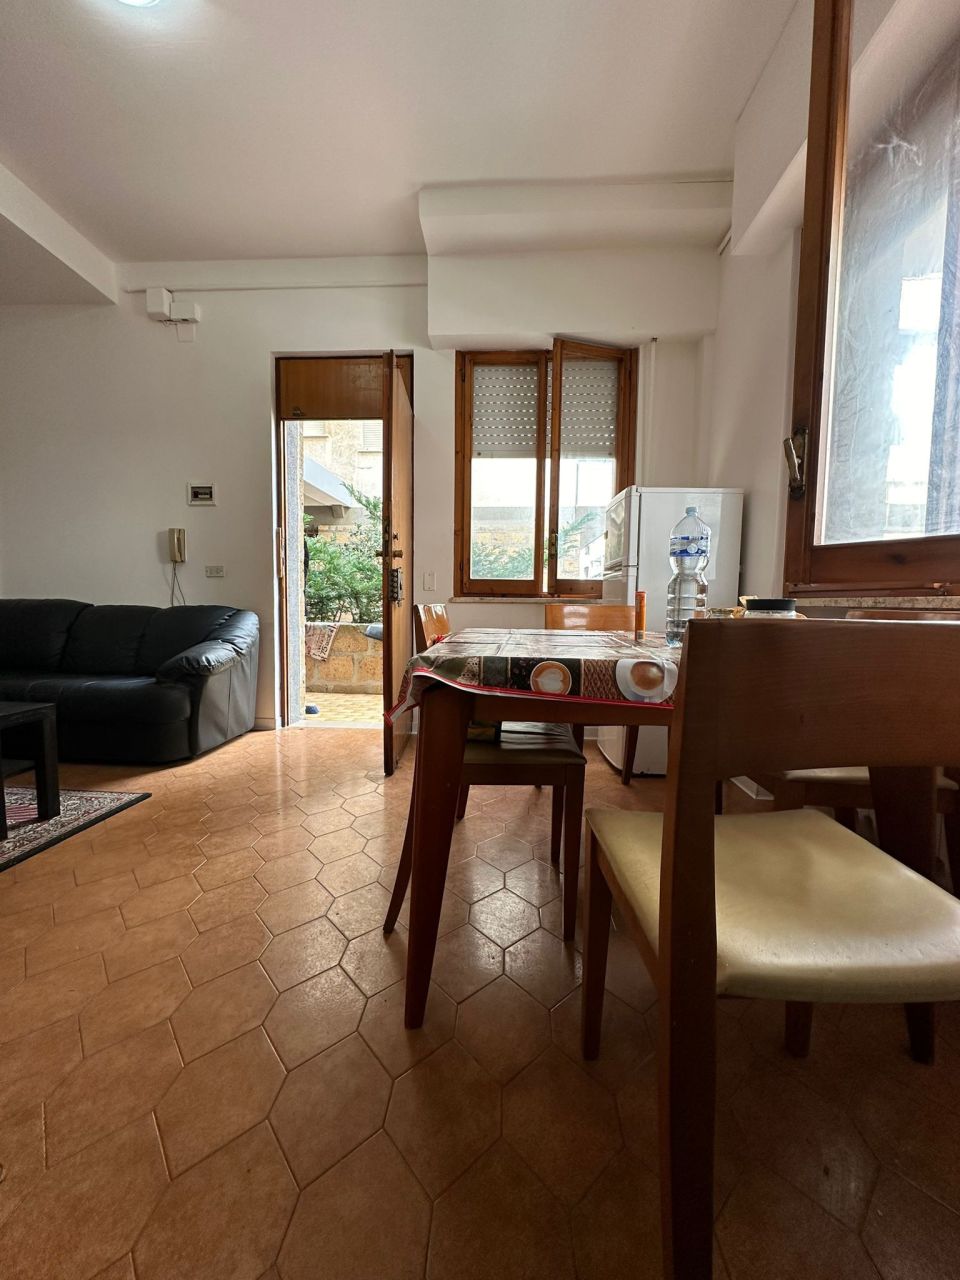 Appartamento in vendita a Francavilla al Mare, 4 locali, prezzo € 120.000 | PortaleAgenzieImmobiliari.it